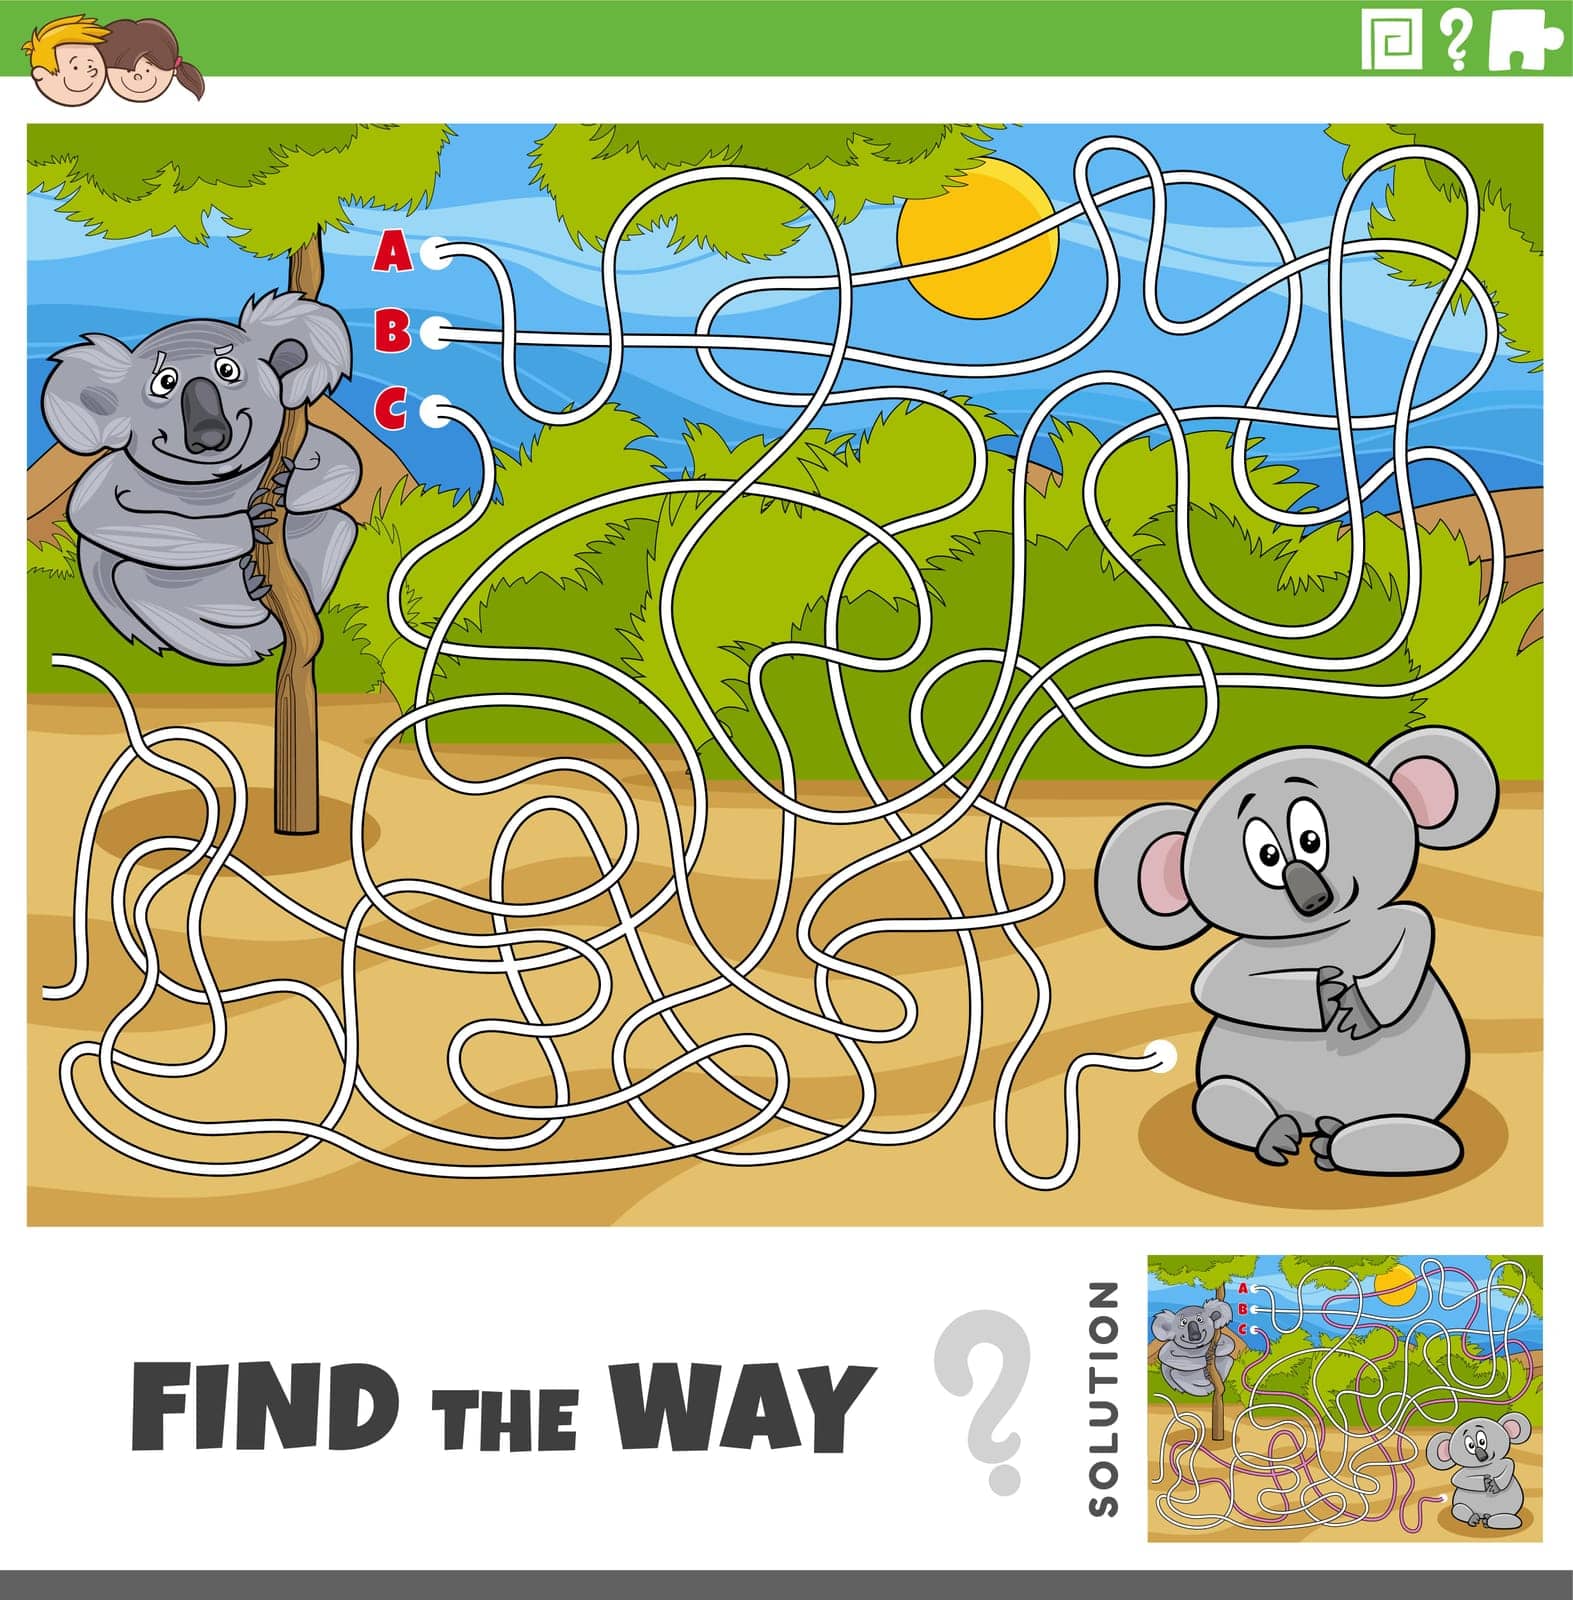 find the way maze game with cartoon koala bears animals by izakowski